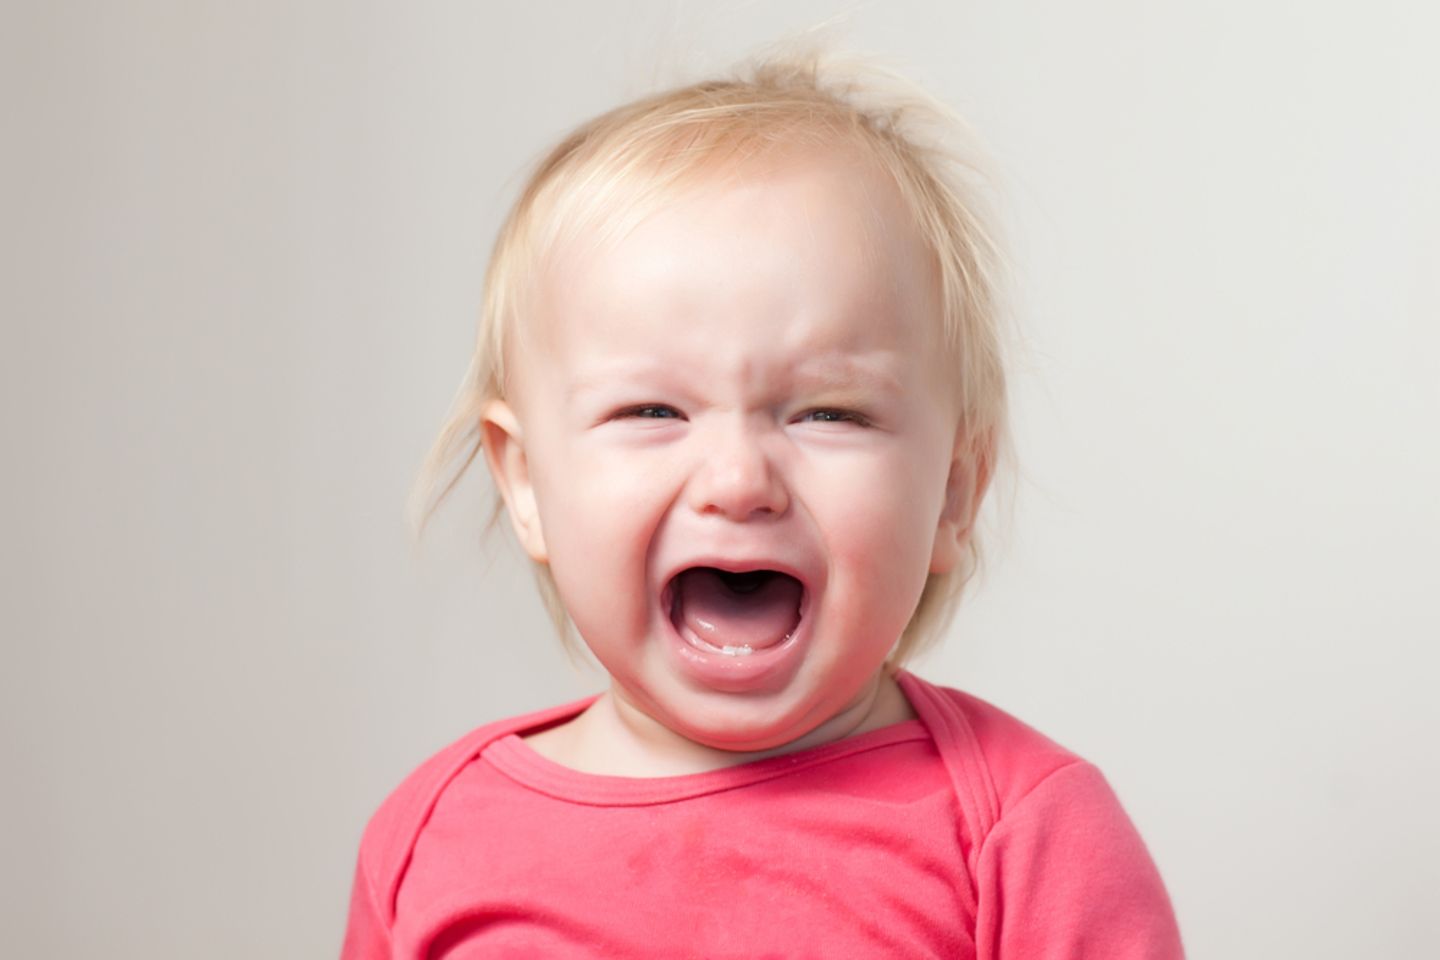 Nachbarn rufen Polizei, weil das Baby zu laut schreit - doch die Eltern reagieren mit Humor